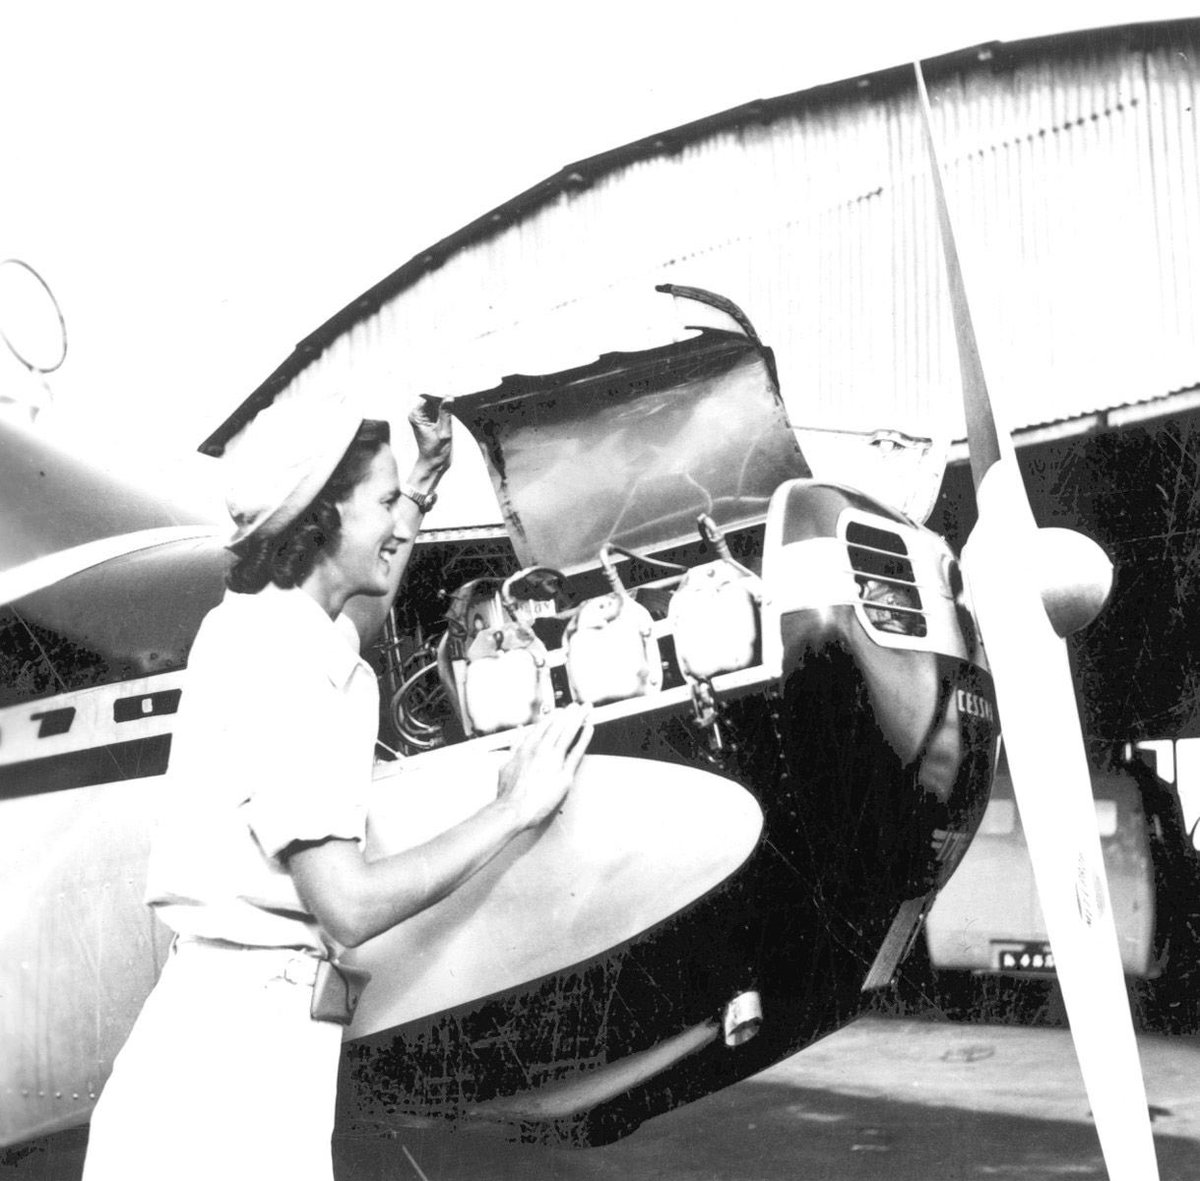 Heute ist ein historischer Tag! Vor genau 75 Jahren, am 23. Februar 1946, schrieb Pilotin Betty Greene Geschichte. Sie führte den allerersten Flug von MAF durch. 
#75yearsofmaf #iflymaf #mafinternational #mafdeutschland #legendär #buschpilotin #frauenpower #starkefrauen